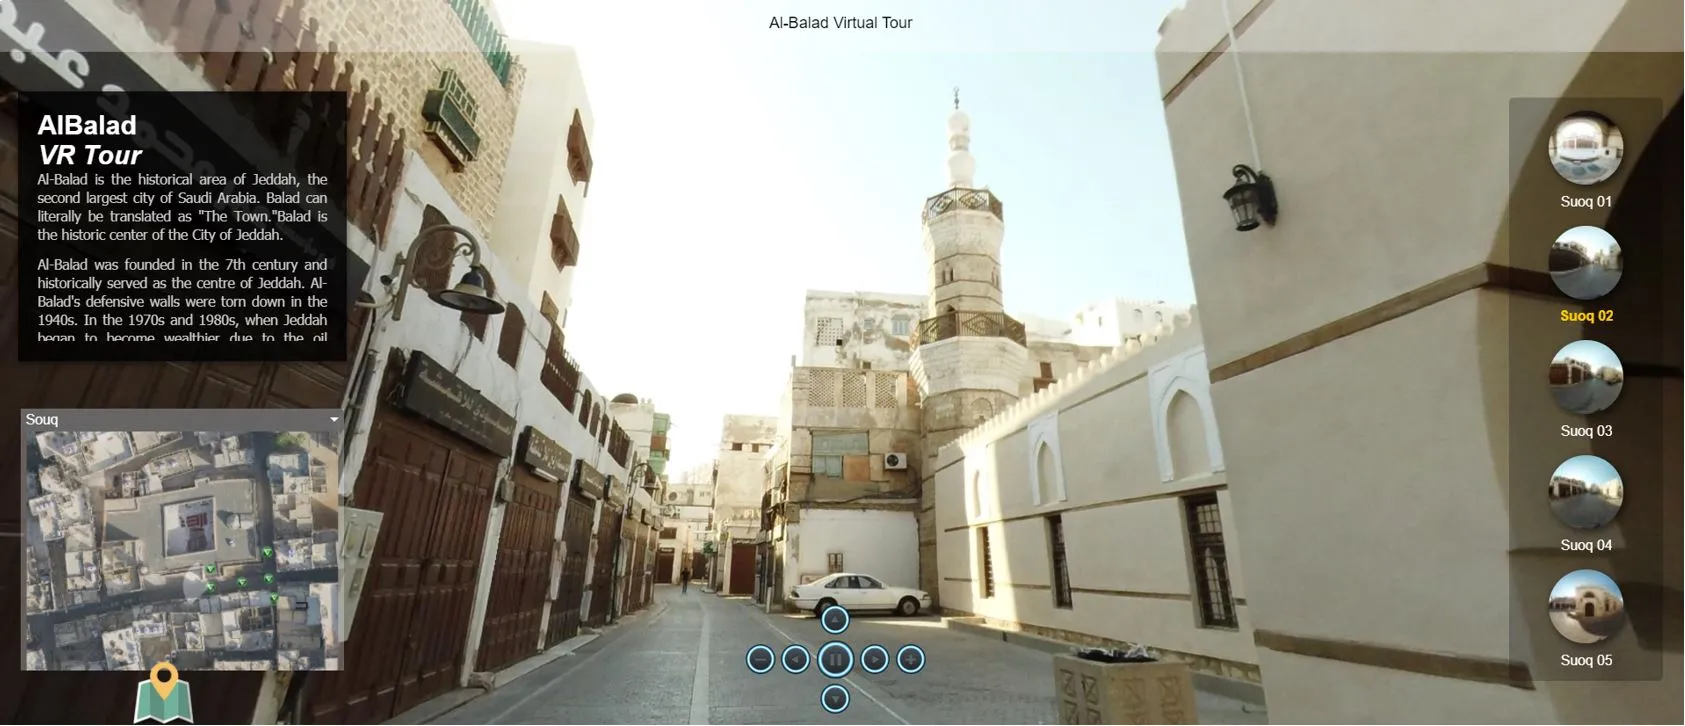 Saudi Virtual Museum